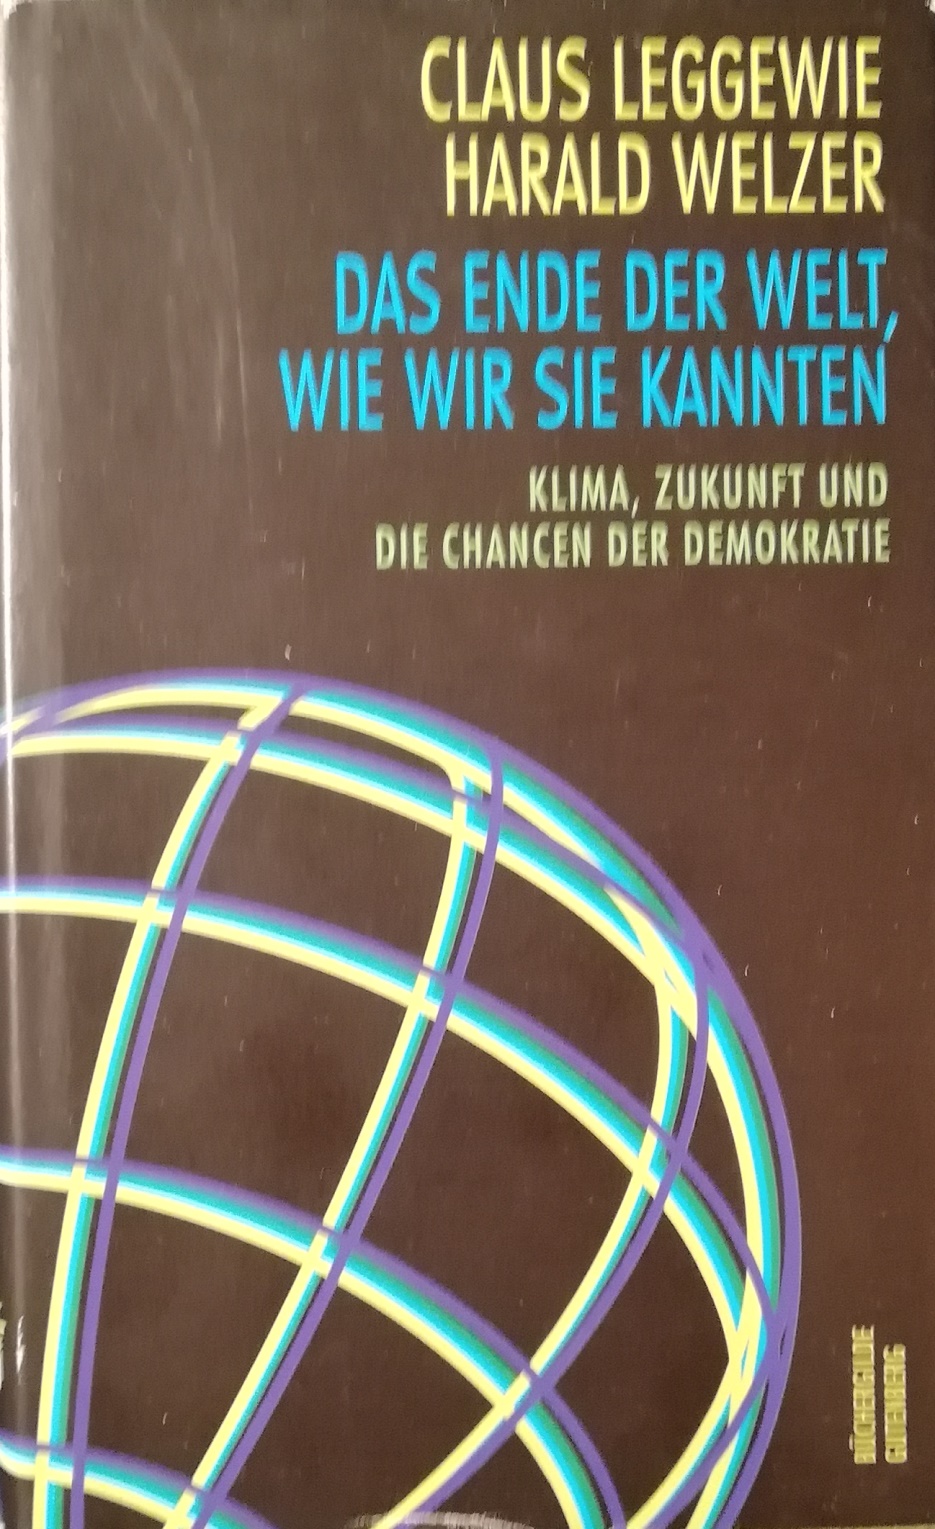 Das Ende der Welt, wie wir sie kannten. Klima, Zukunft und die Chancen der Demokratie - Leggewie, Claus und Harald Welzer